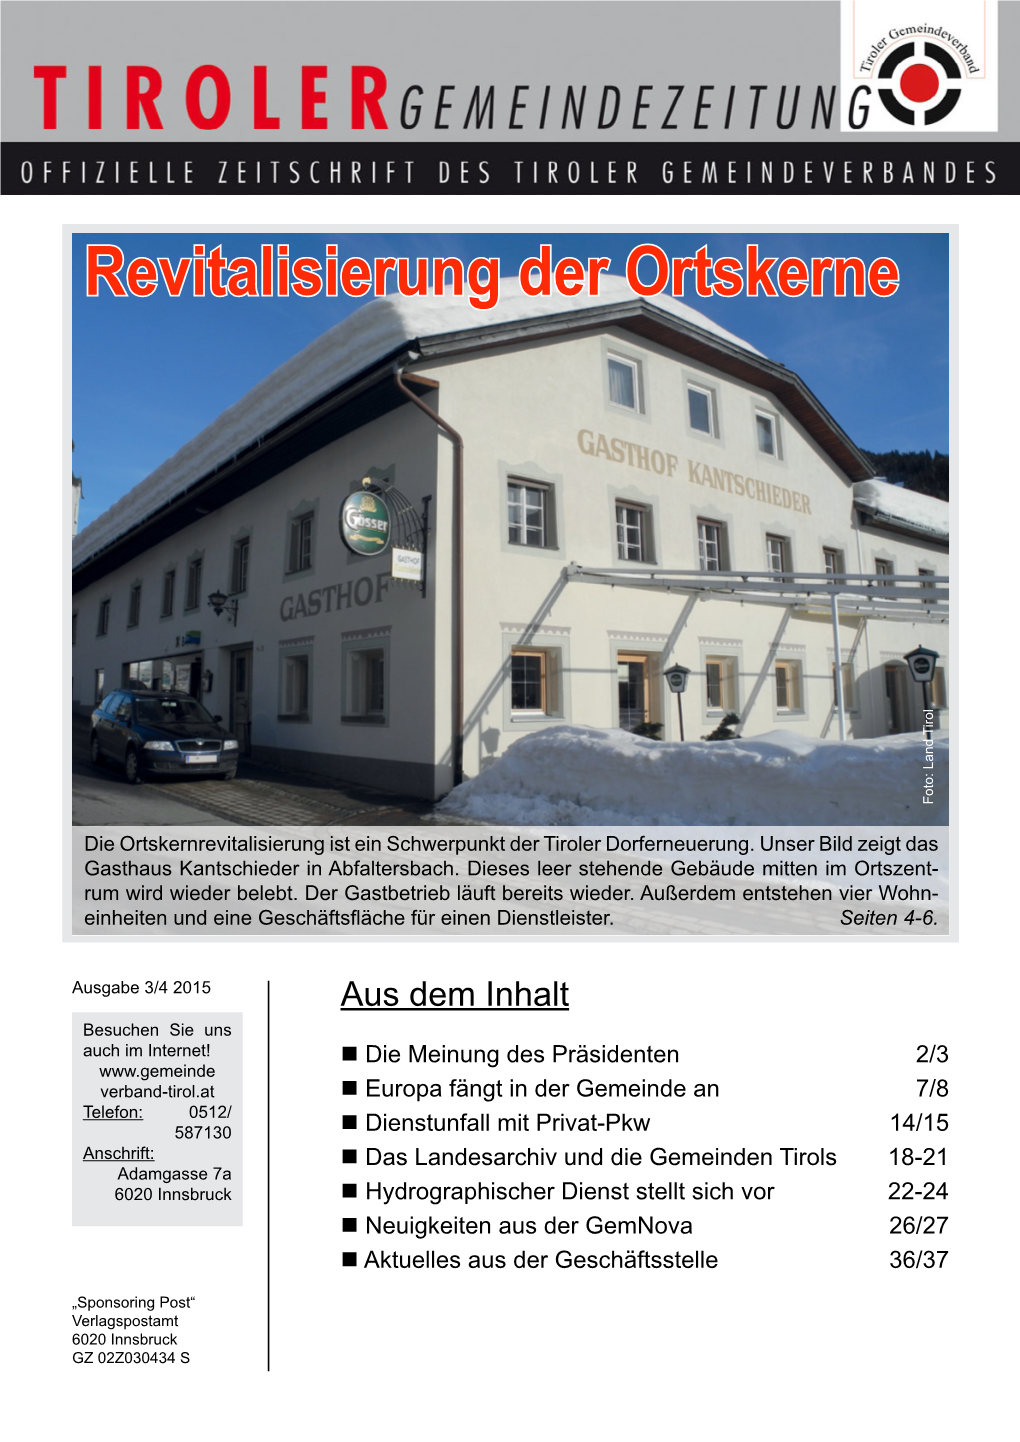 Revitalisierung Der Ortskerne Foto: Land Tirol